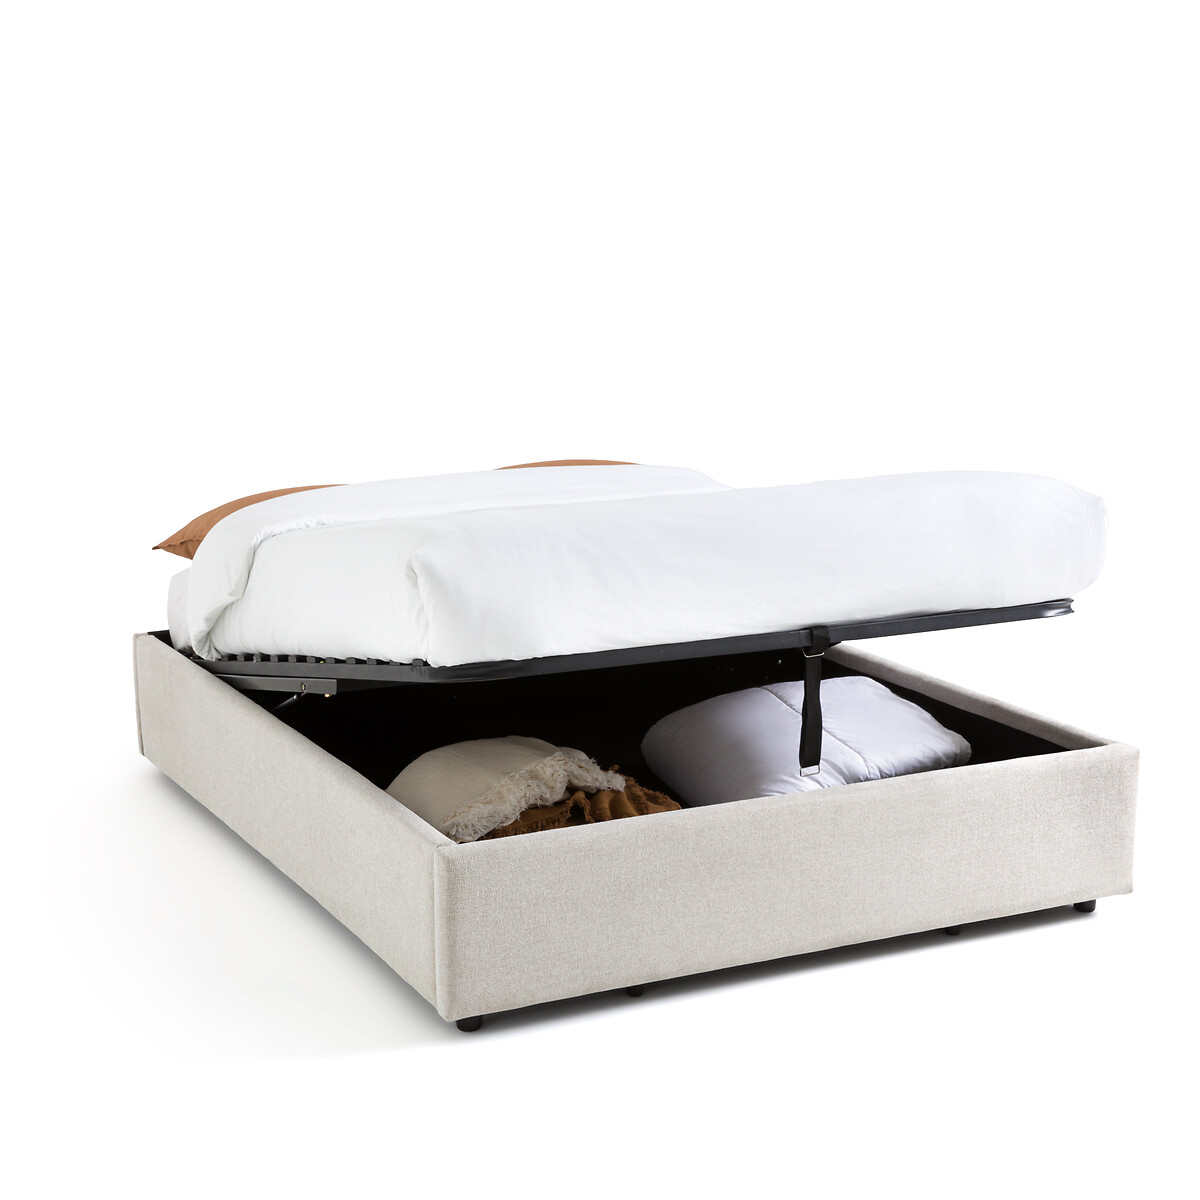 Кровать С реечным дном и ящиком внутри Papilla 140 x 190 см бежевый LaRedoute, размер 140 x 190 см - фото 1